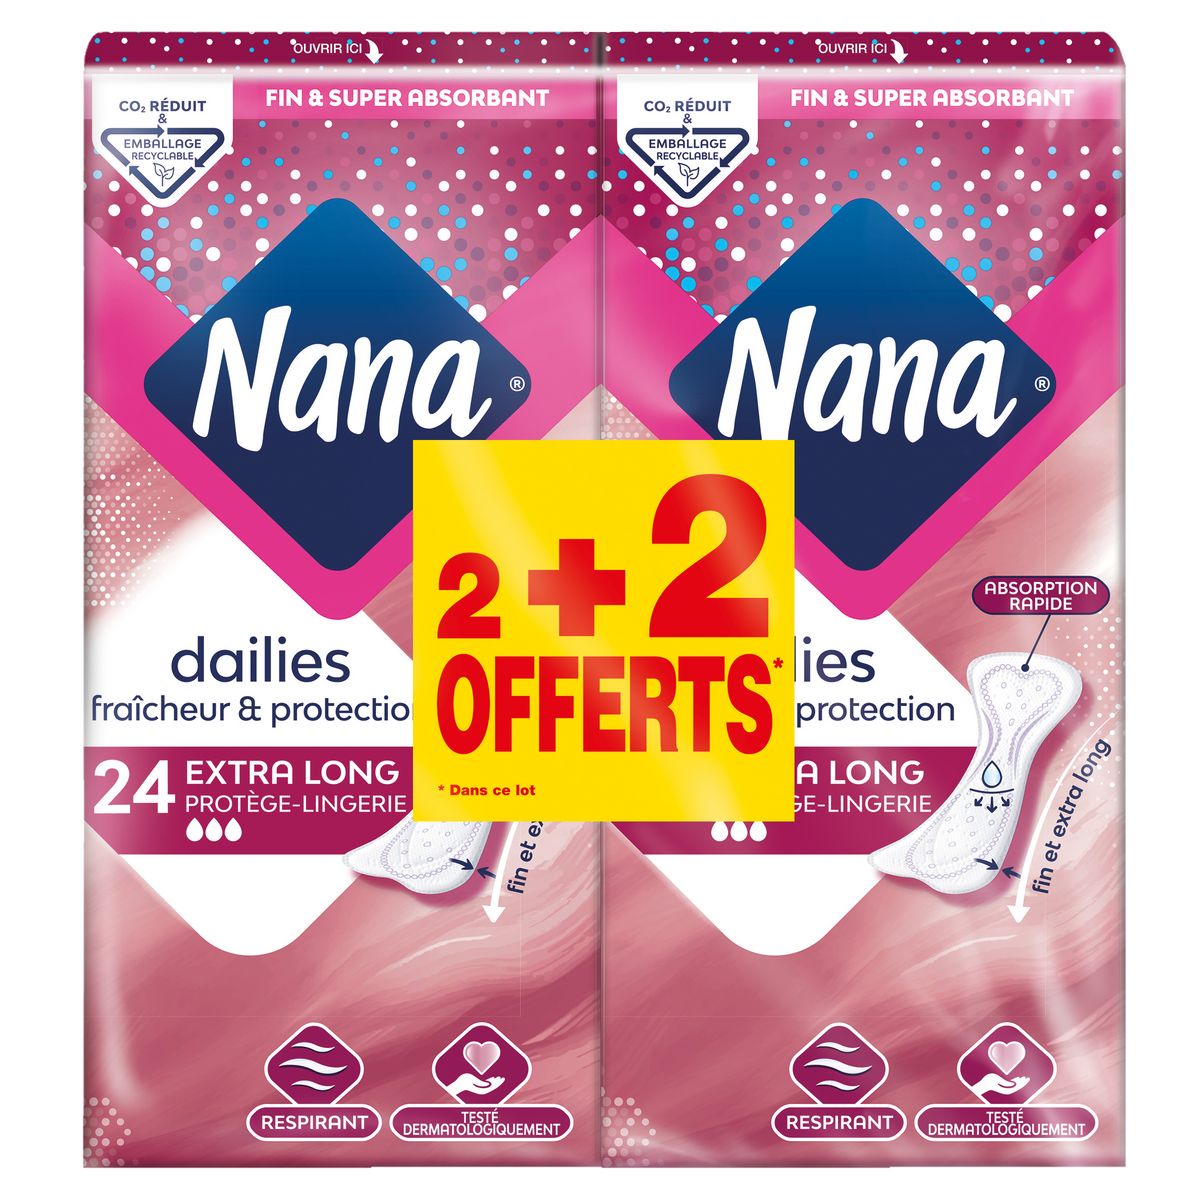 NANA Protège-lingerie fraîcheur et protection extra long 2+2 offerts 4x24 pièces